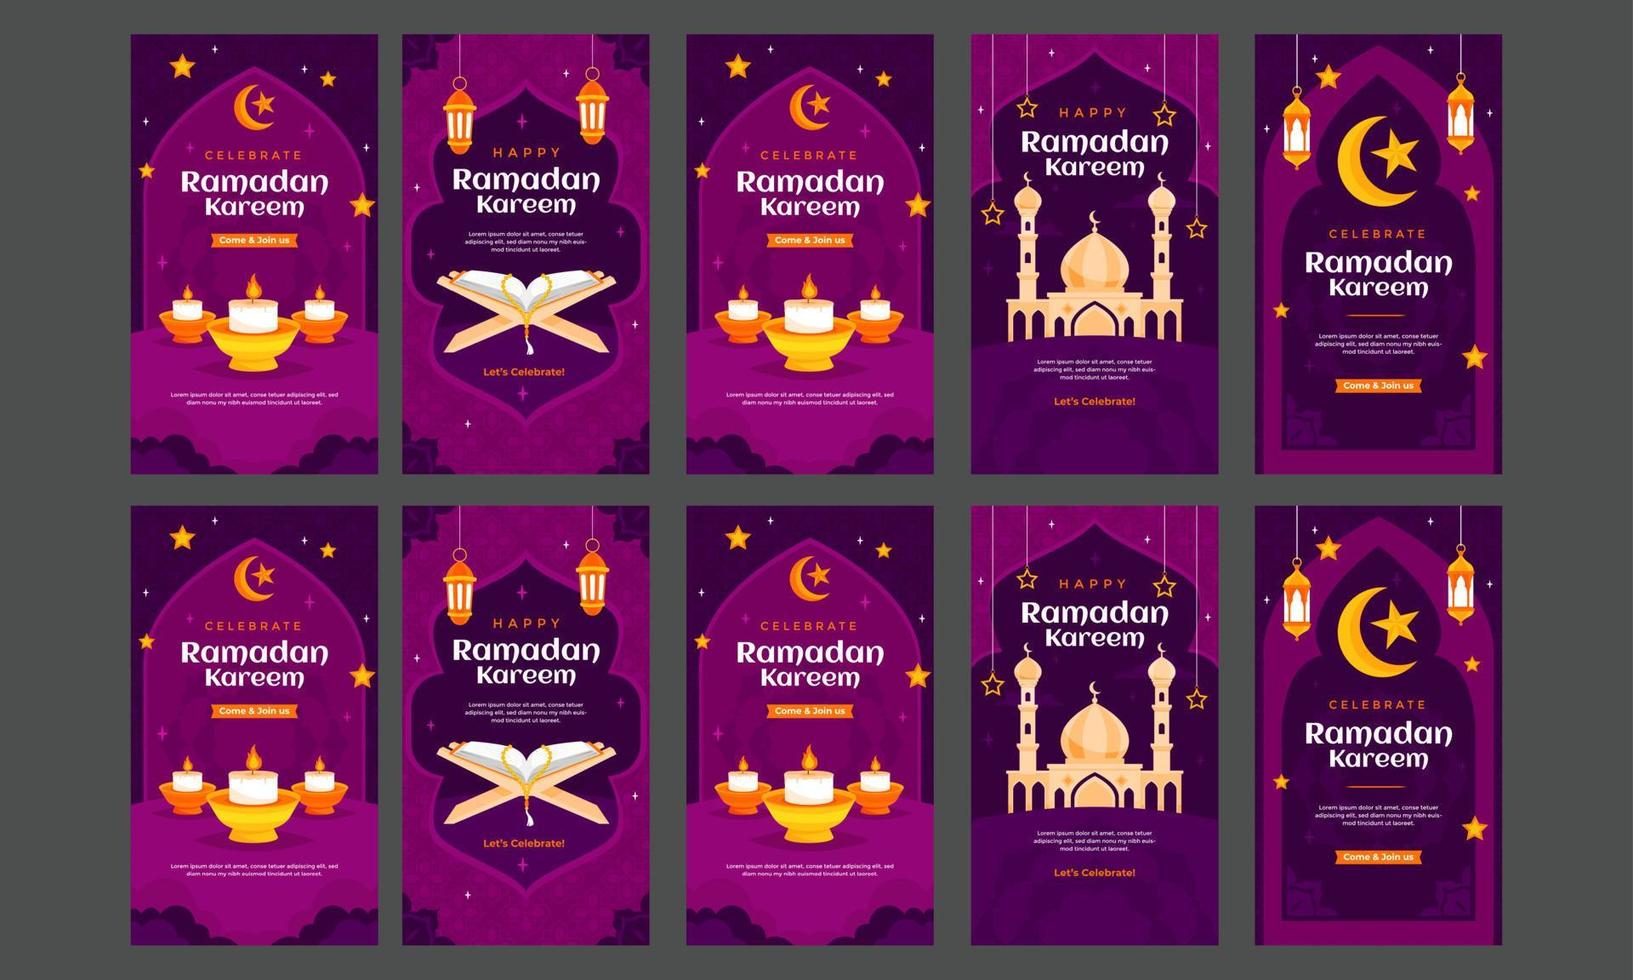 contento celebrando Ramadán kareem social medios de comunicación cuentos vector plano diseño